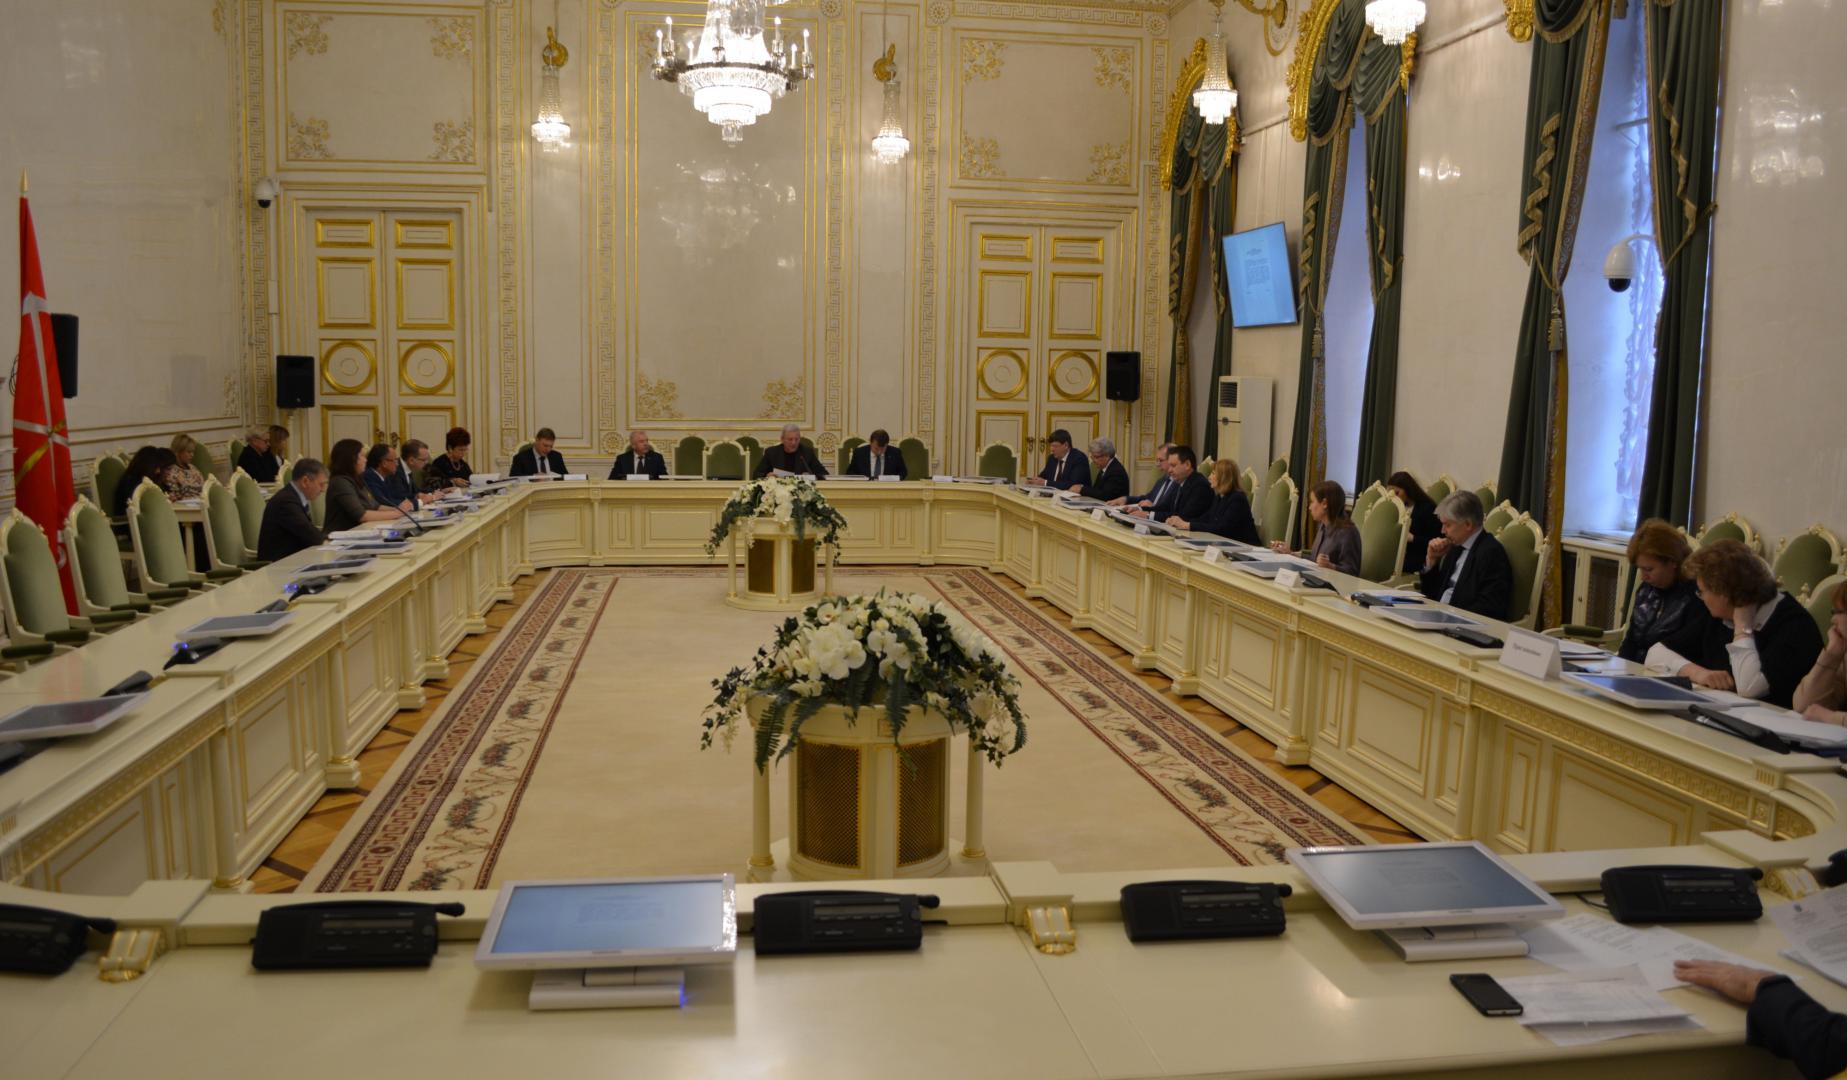 Руководители Контрольно-счетной палаты Санкт-Петербурга представили отчет о контрольном мероприятии в городском парламенте